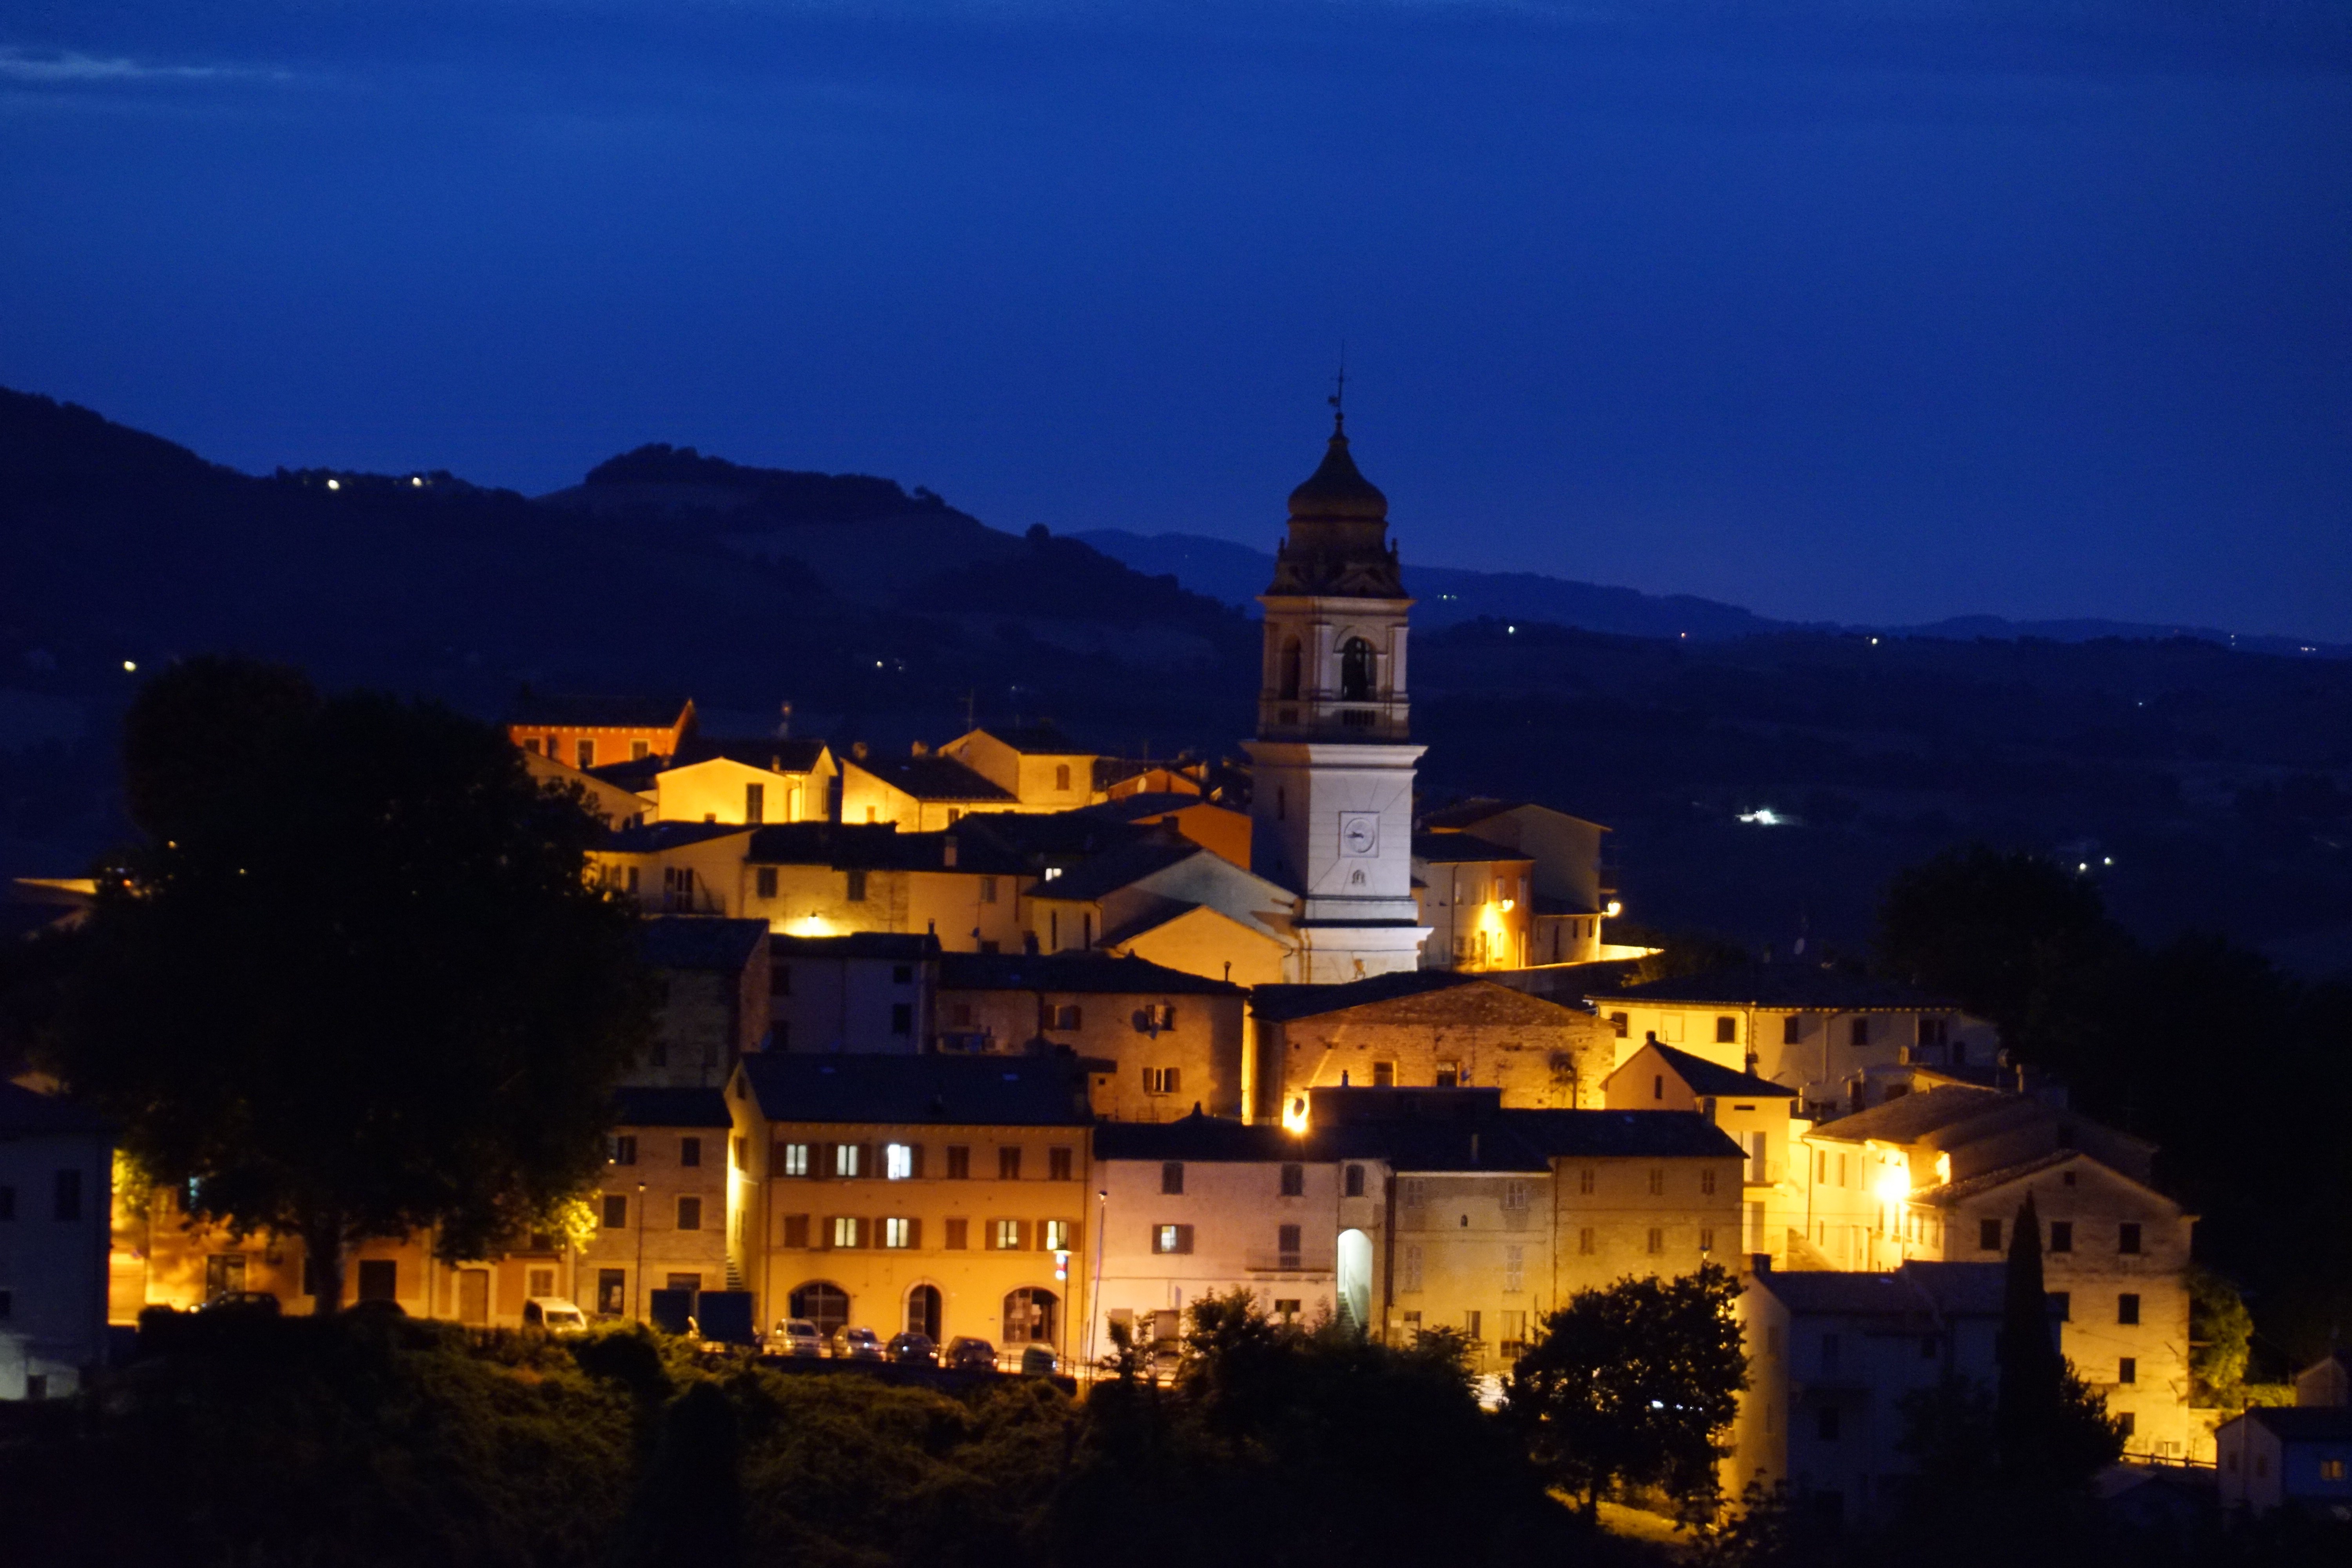 Sant'Ippolito - Panorama di notte